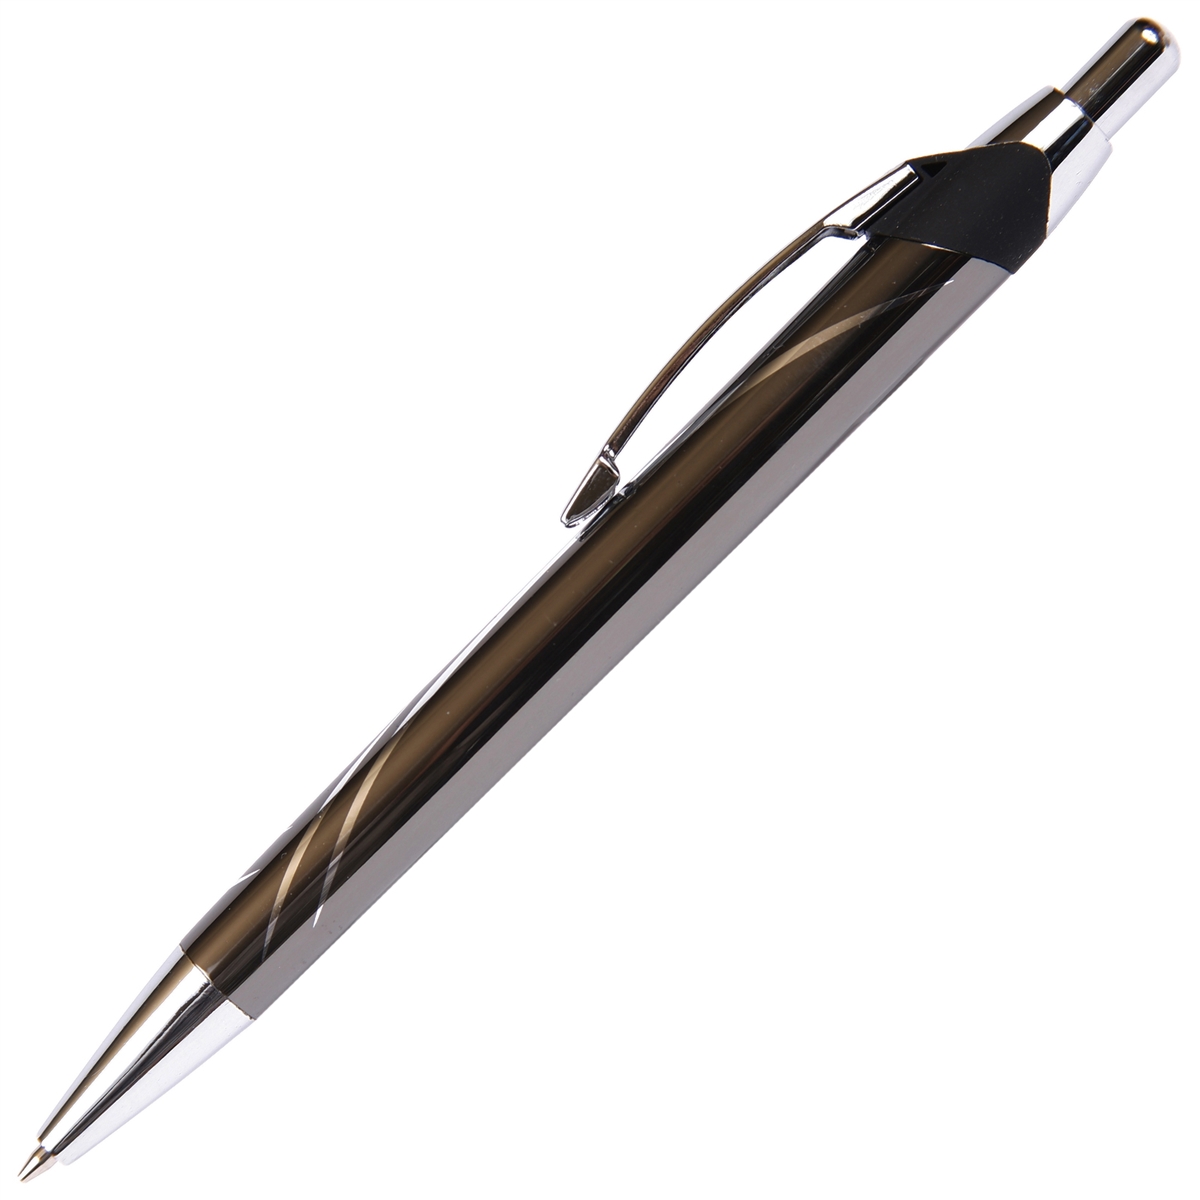 C206 - Gun Metal Ball Point Pen by Lanier Pens